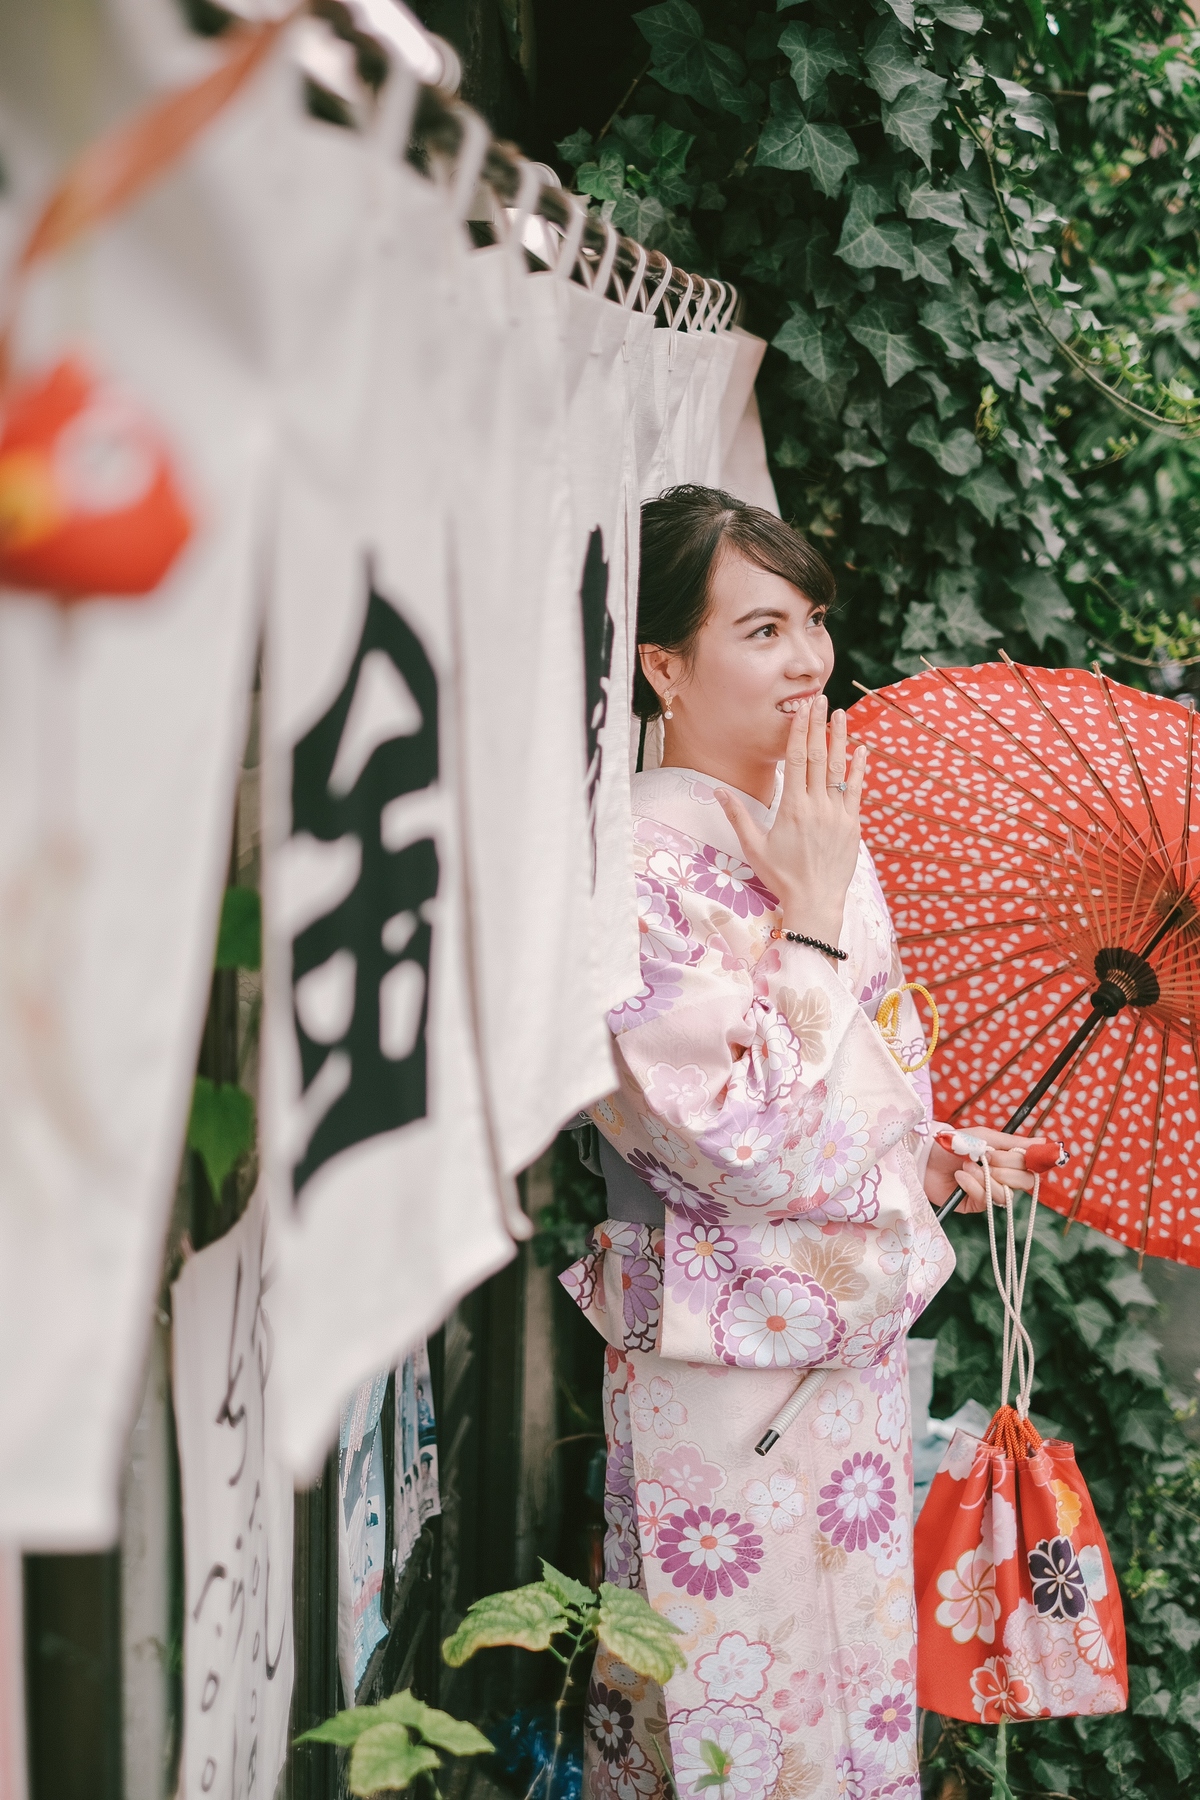 Kimono là trang phục truyền thống của Nhật Bản được ưa chuộng trong các bức ảnh cưới. Nhìn vào hình ảnh này, bạn sẽ bị thu hút bởi sự trang trọng, thanh lịch nhưng cũng rất tươi trẻ và đầy ma mị của thiết kế kimono.